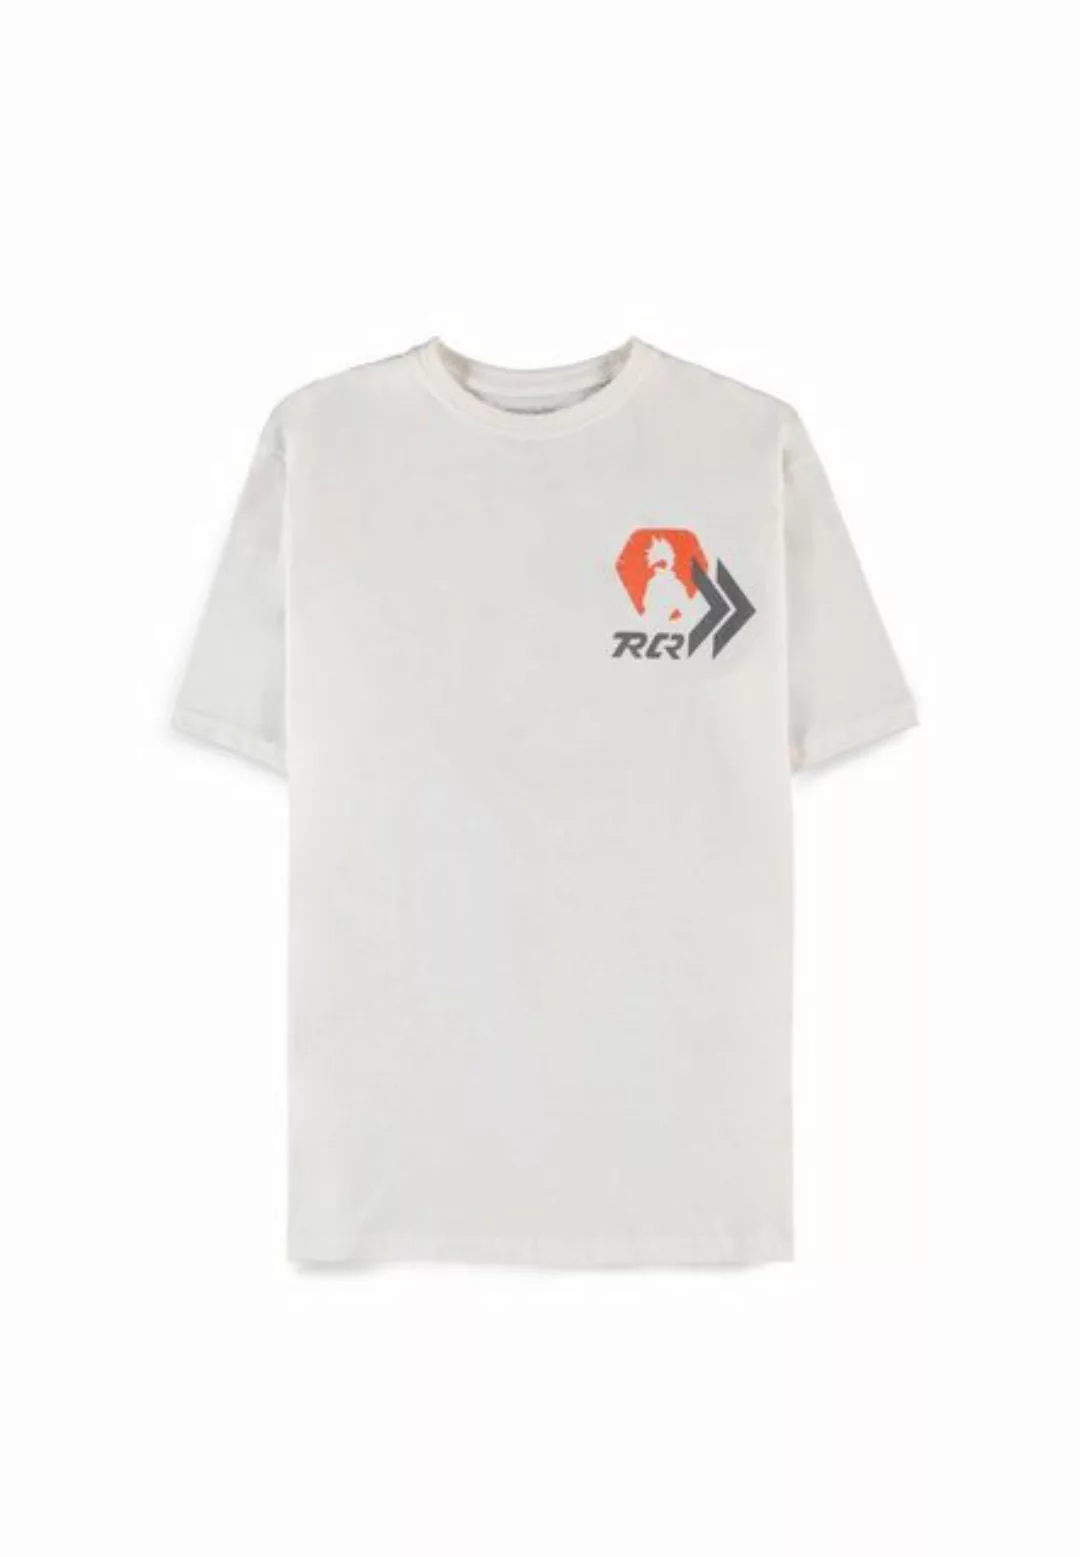 Overwatch T-Shirt günstig online kaufen